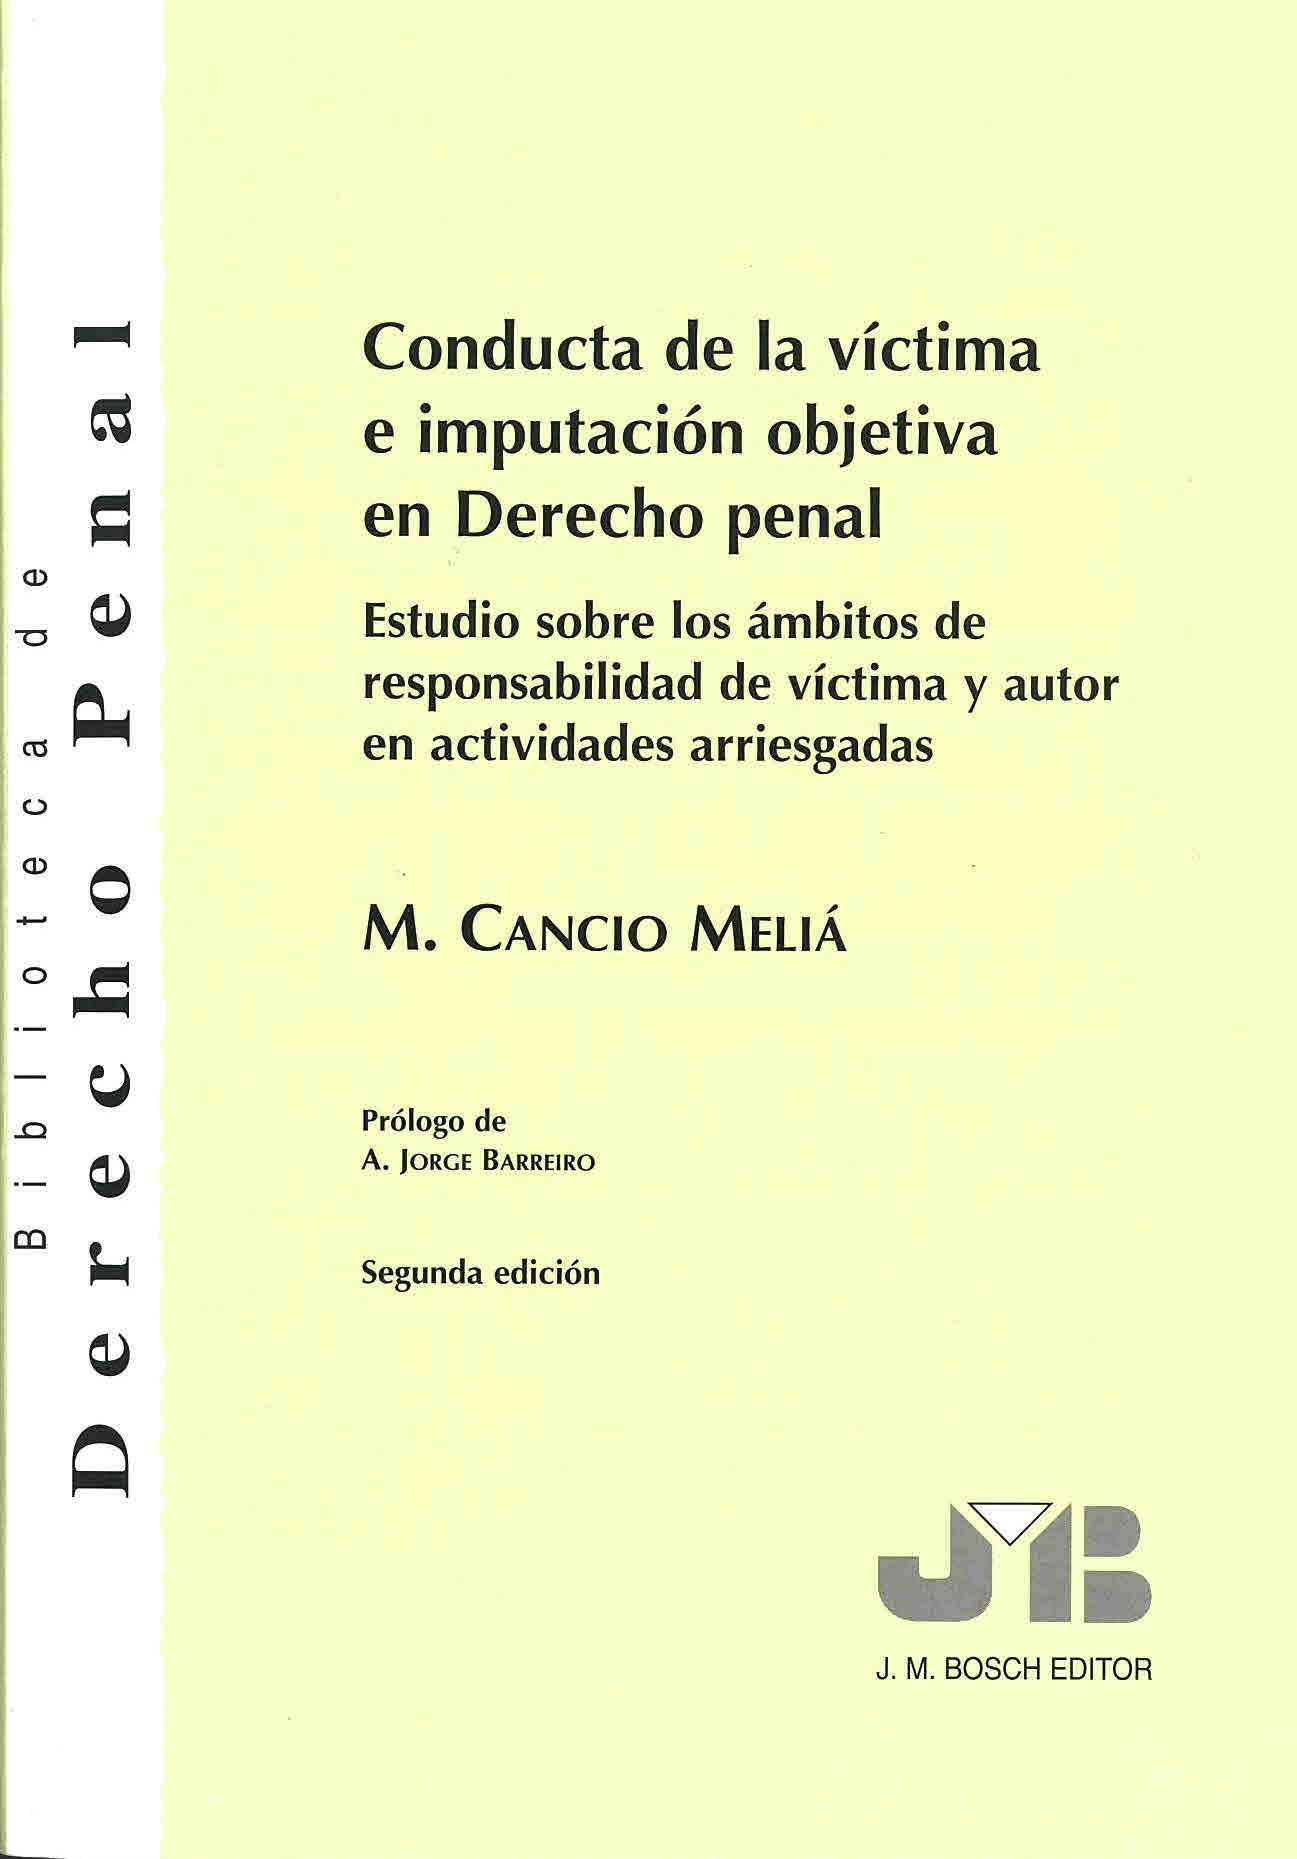 Conducta de la víctima e imputación objetiva en derecho penal : estudio sobre los ámbitos de responsabilidad de víctima y autor en actividades arriesgadas